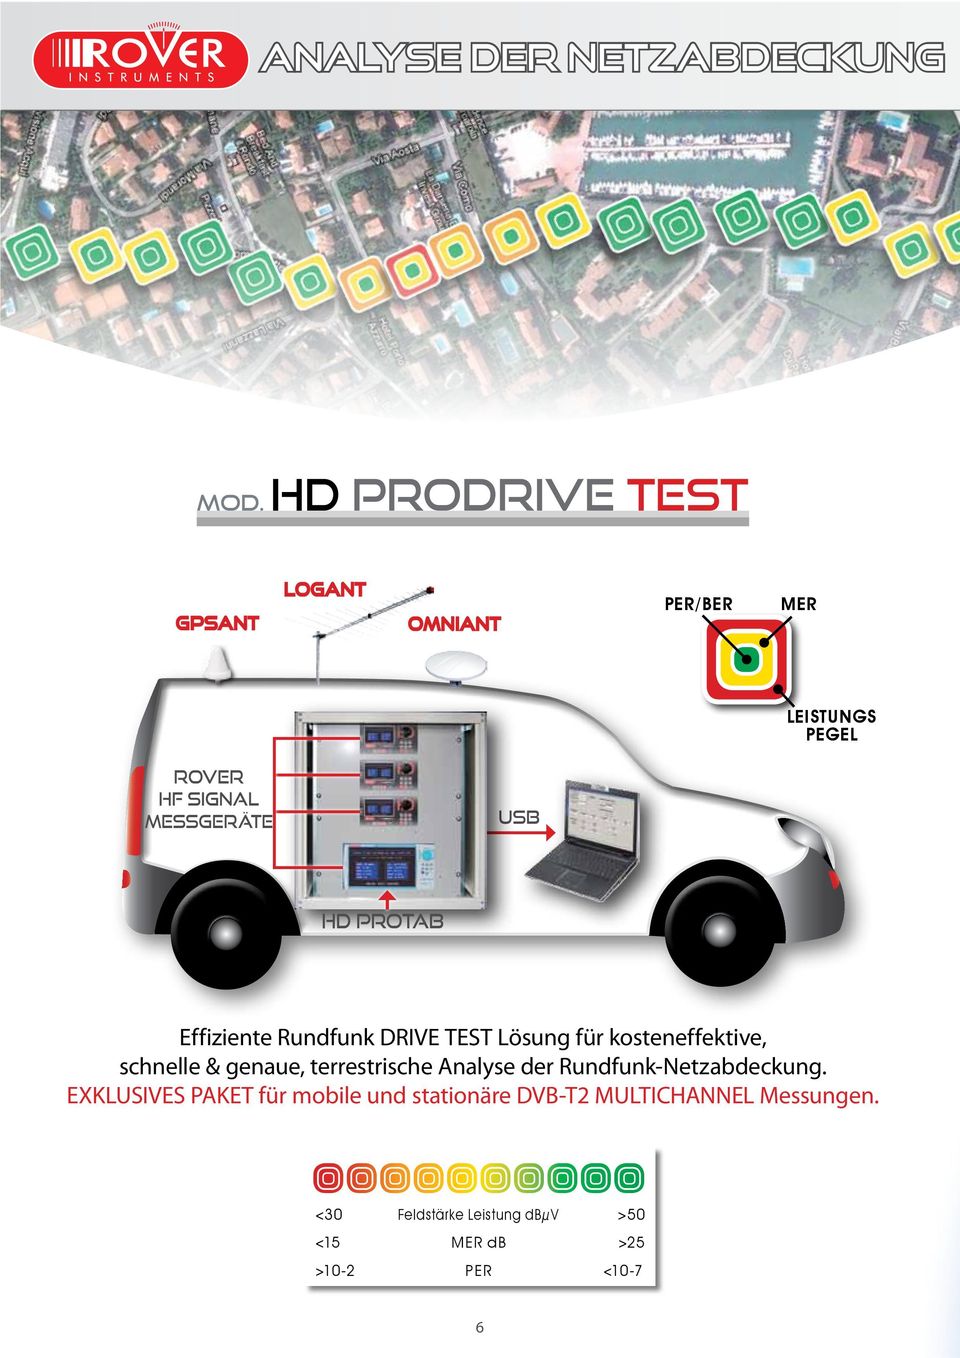 PROTAB Effiziente Rundfunk DRIVE TEST Lösung für kosteneffektive, schnelle & genaue, terrestrische